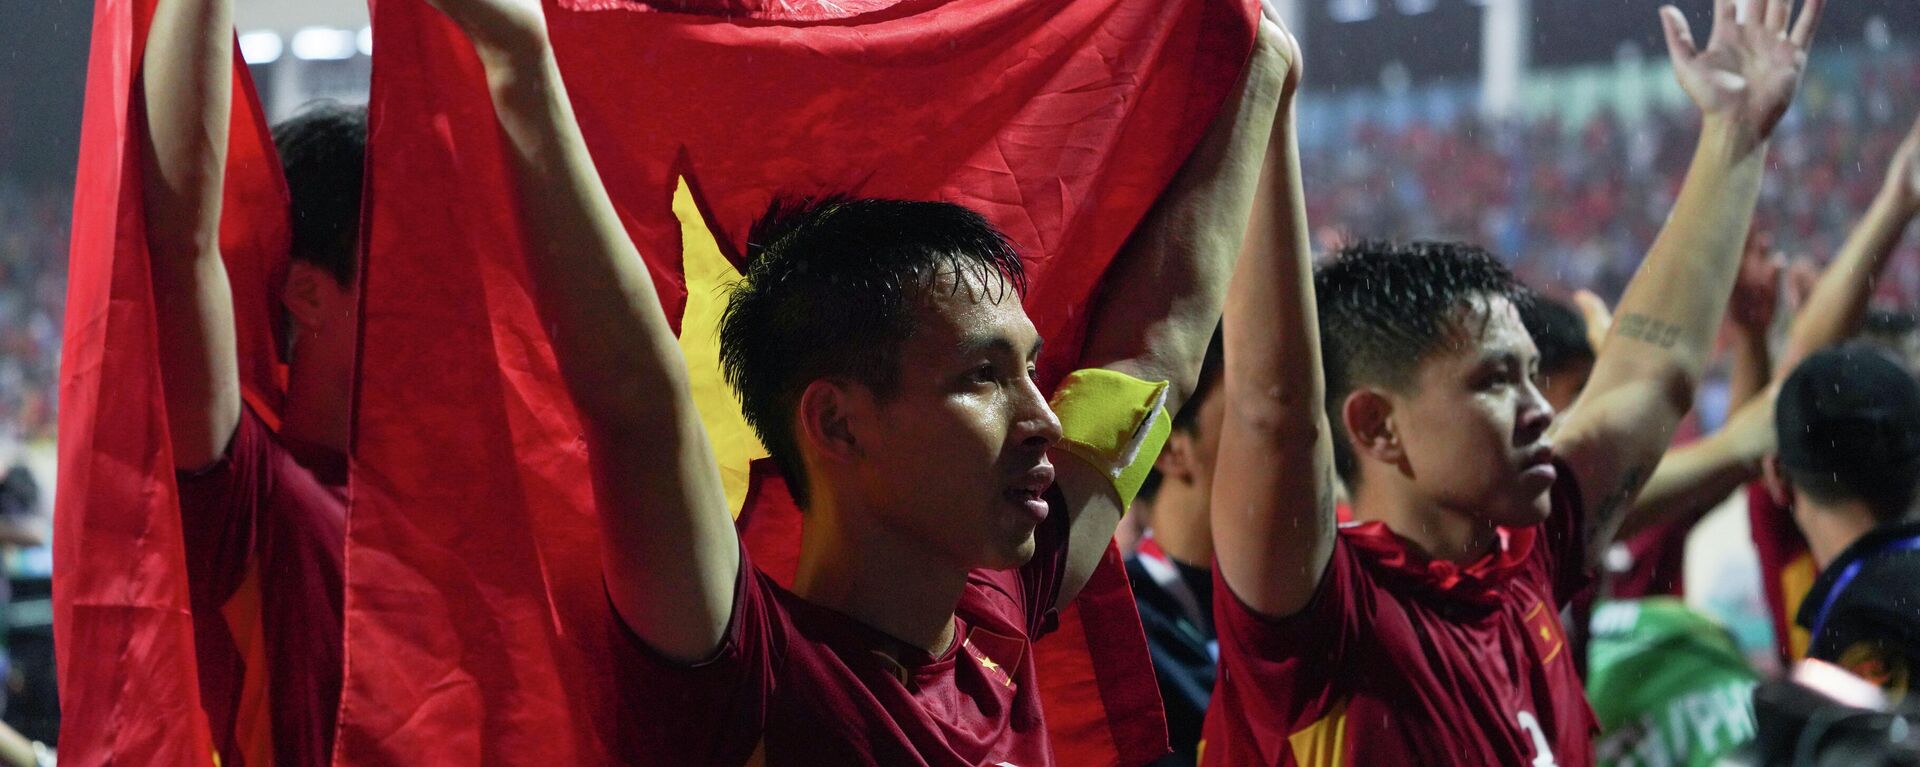 Các cầu thủ Việt Nam ăn mừng chiến thắng trên bục cùng người hâm mộ tại chung kết bóng đá nam SEA Games 31 (Đội trưởng Hùng Dũng và thủ môn Văn Toản) - Sputnik Việt Nam, 1920, 23.05.2022